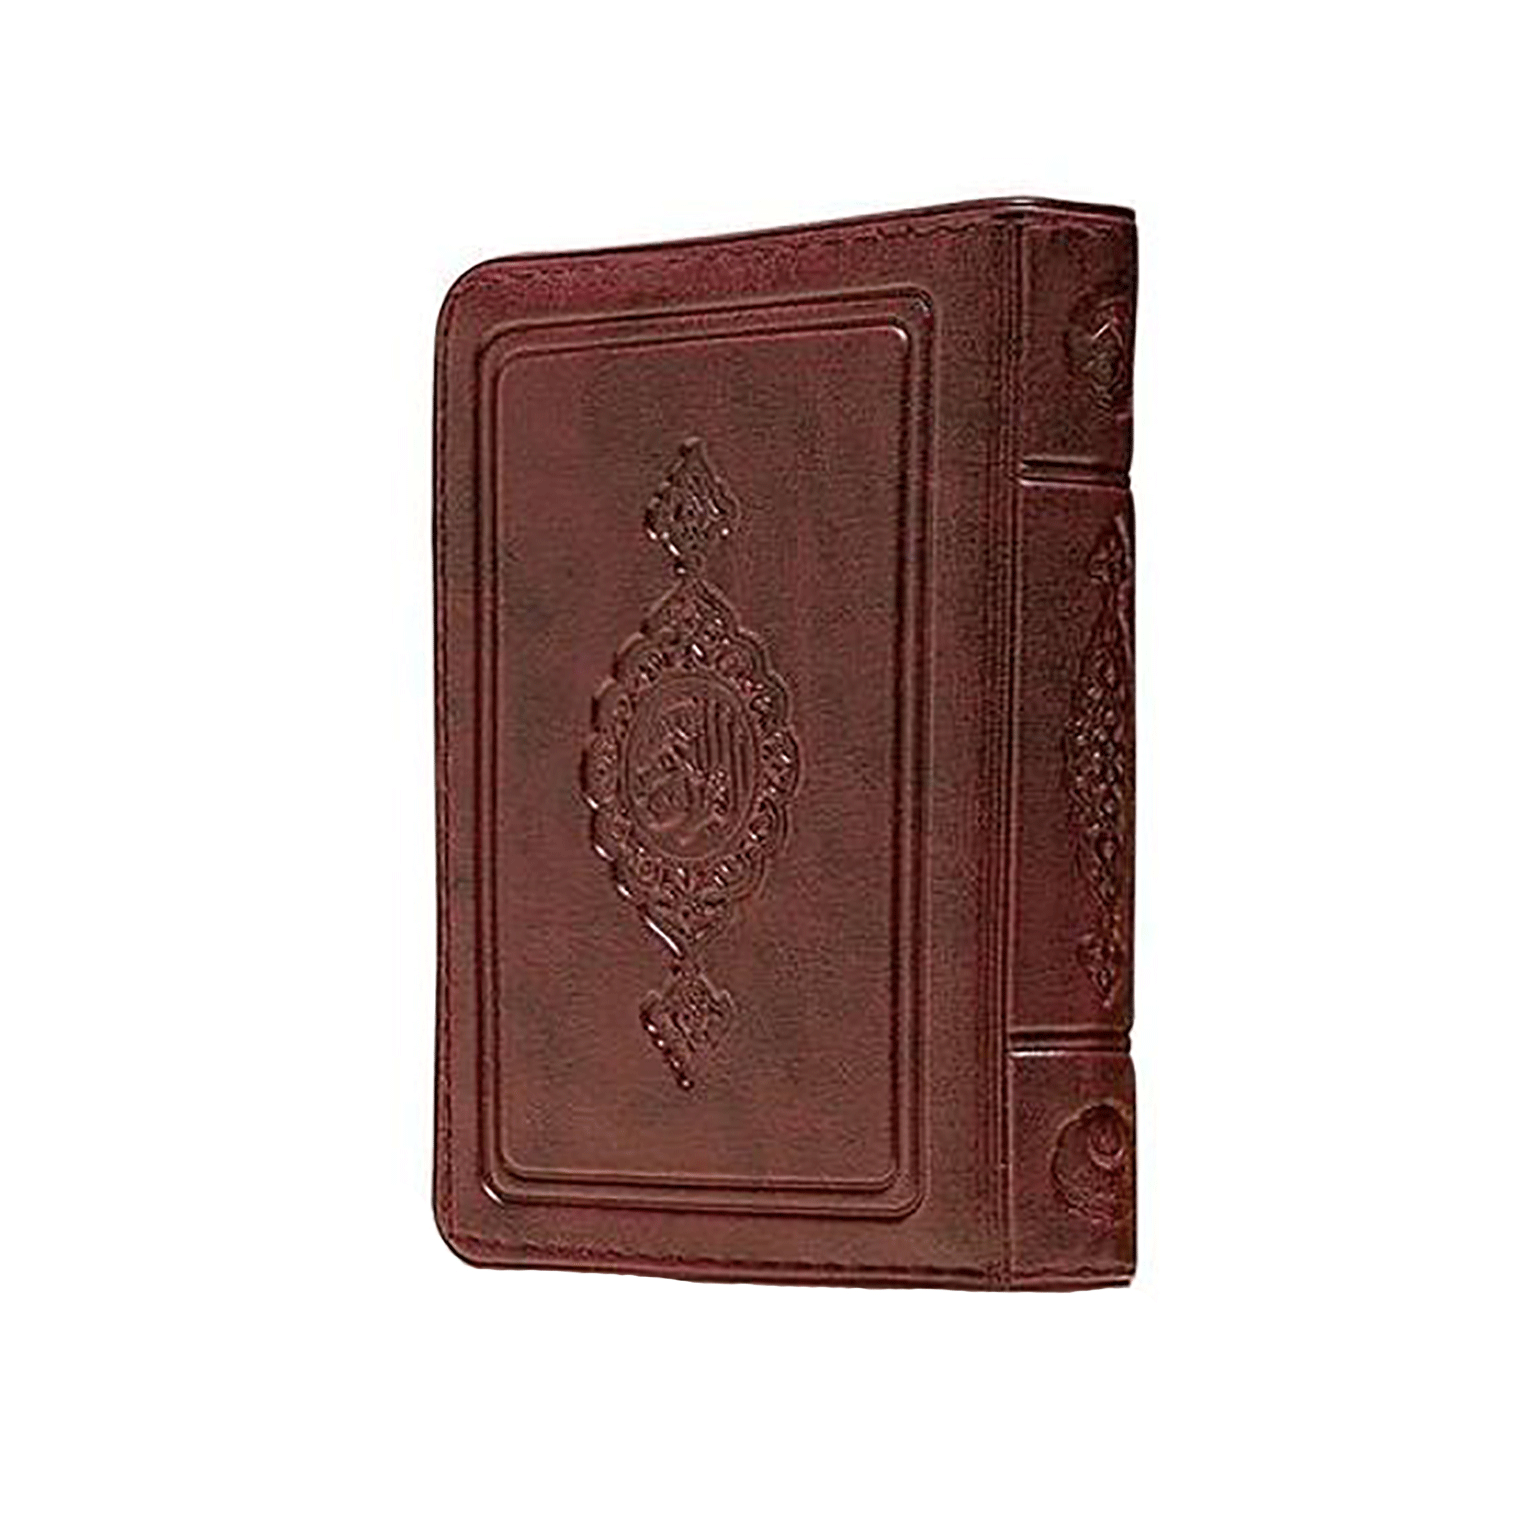 Koran im Taschenbuchformat